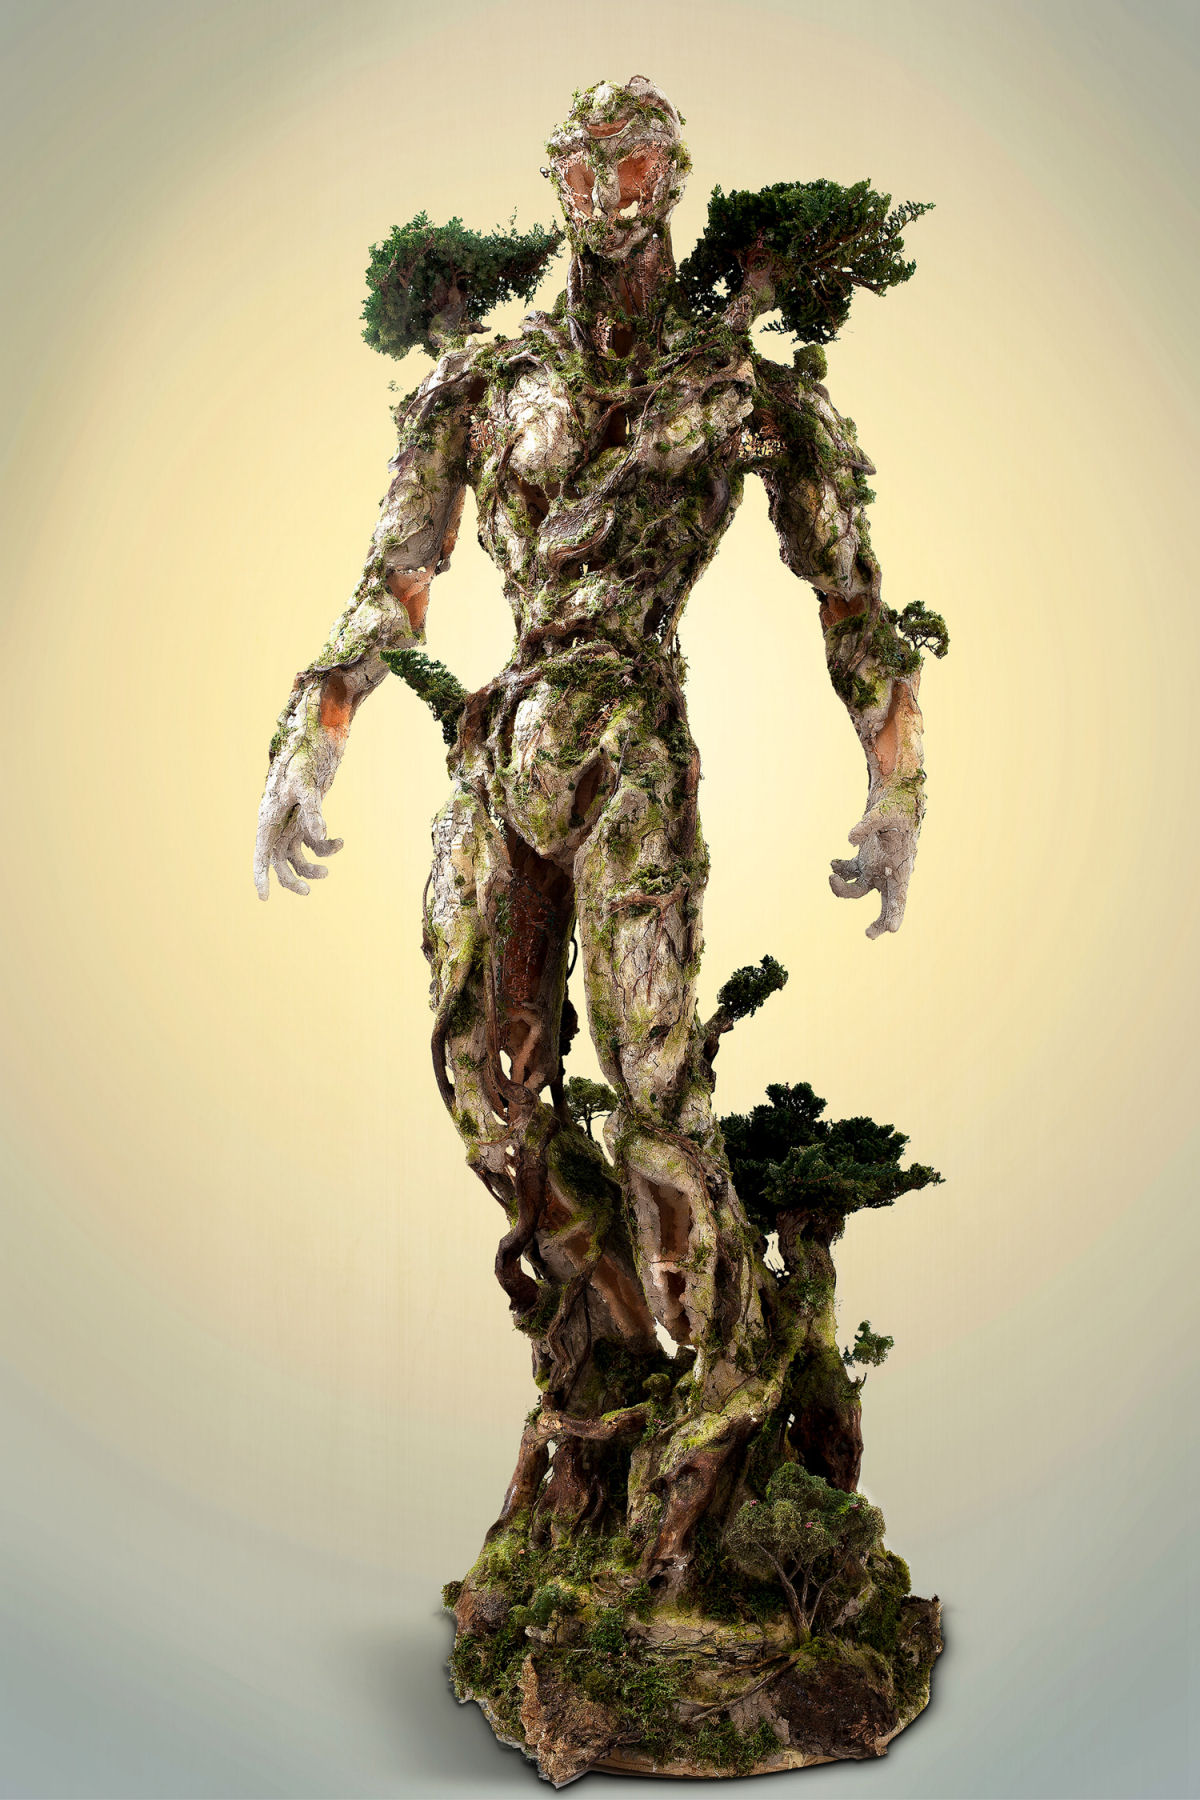 Uma espetacular árvore antropomorfa composta de elementos naturais e tecnológicos 04